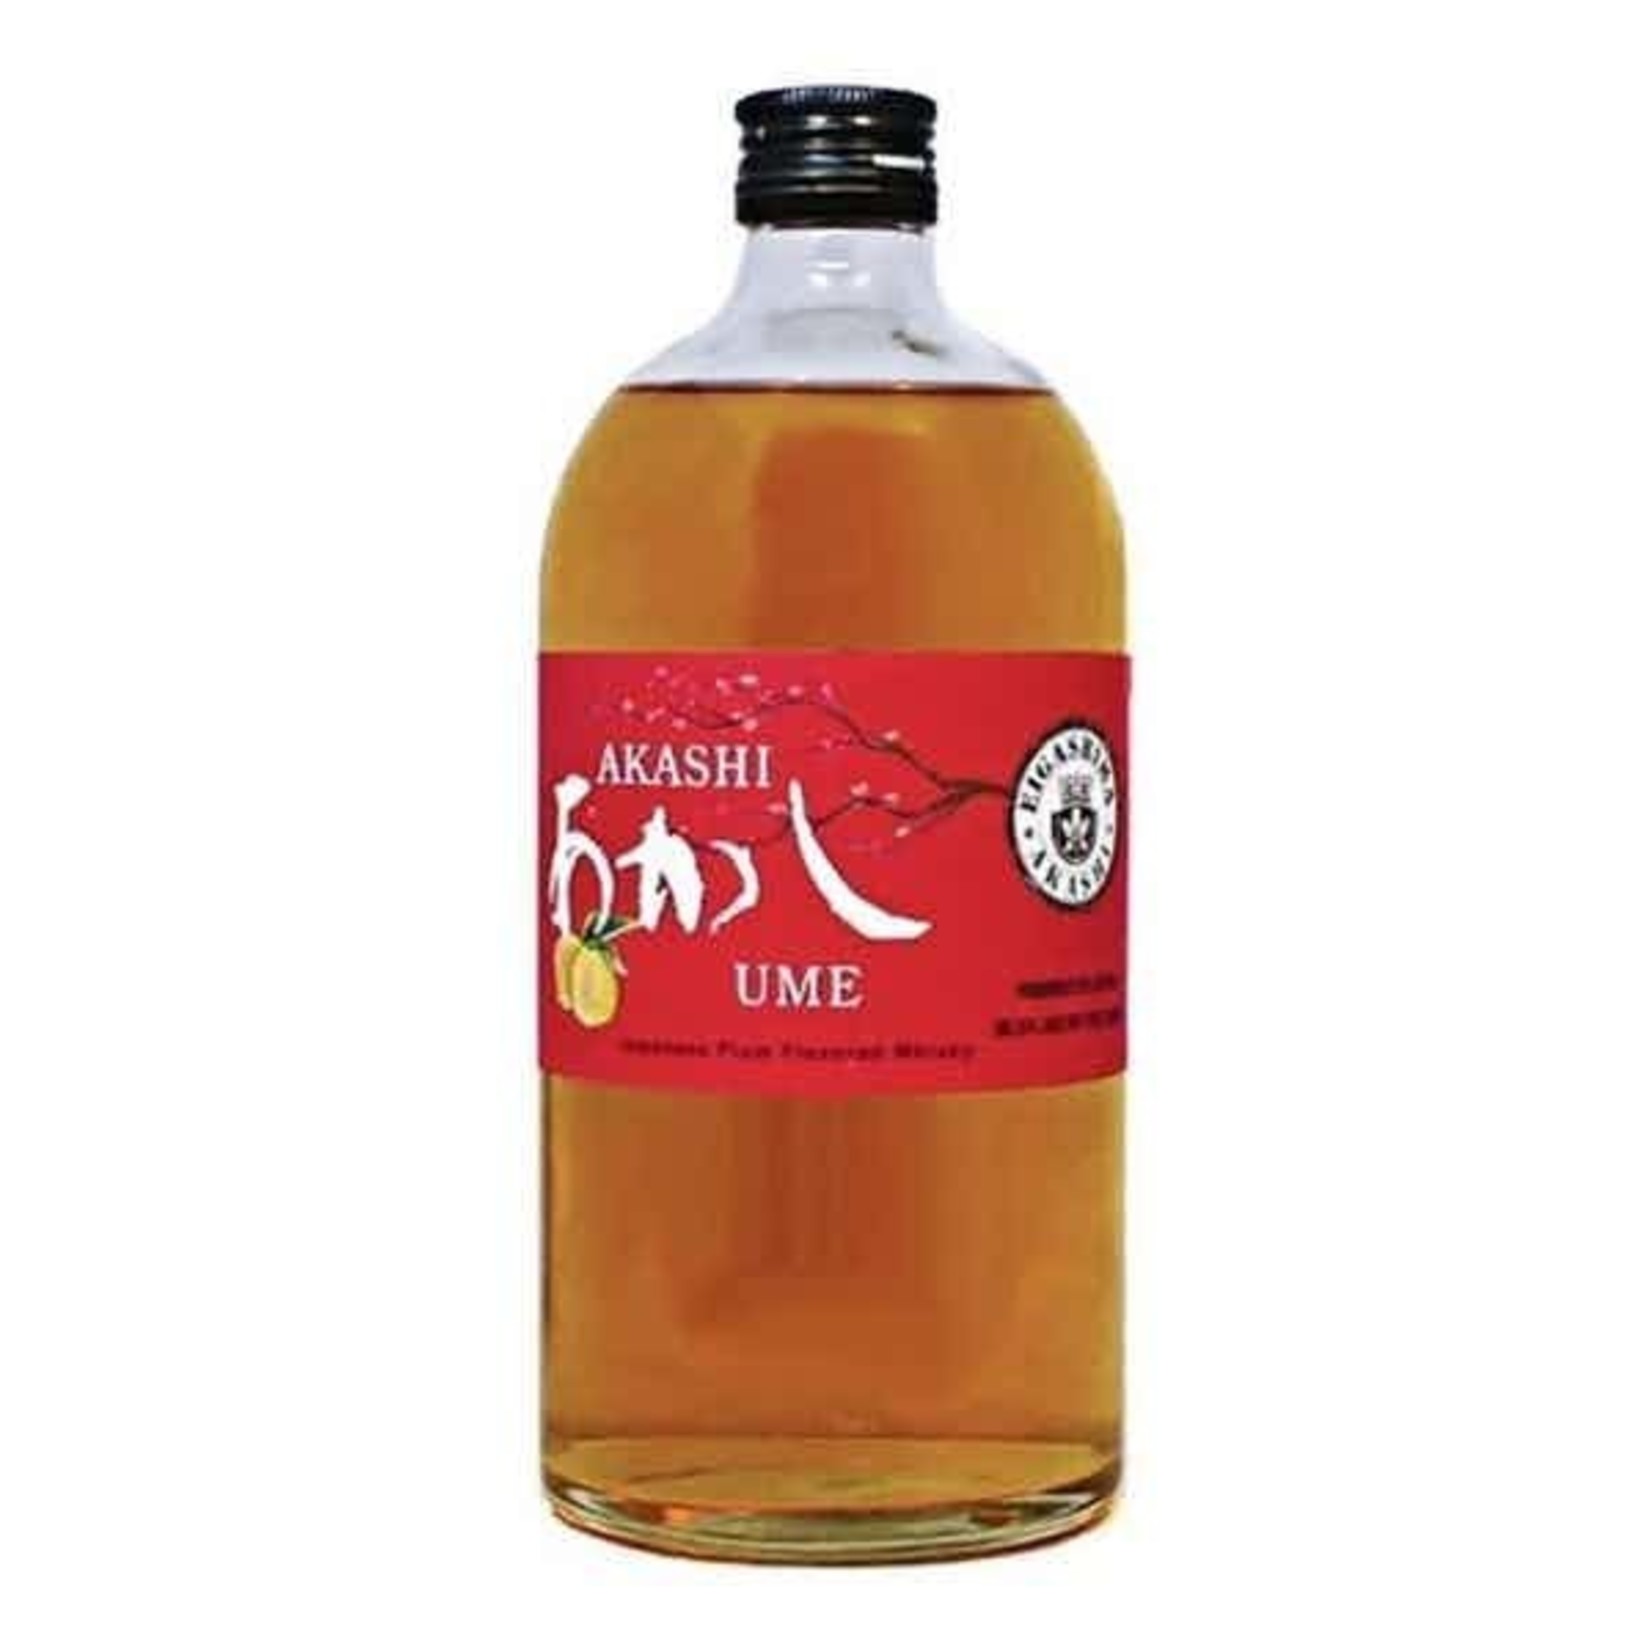 Akashi Akashi White Oak Ume Japanese Plum Whisky